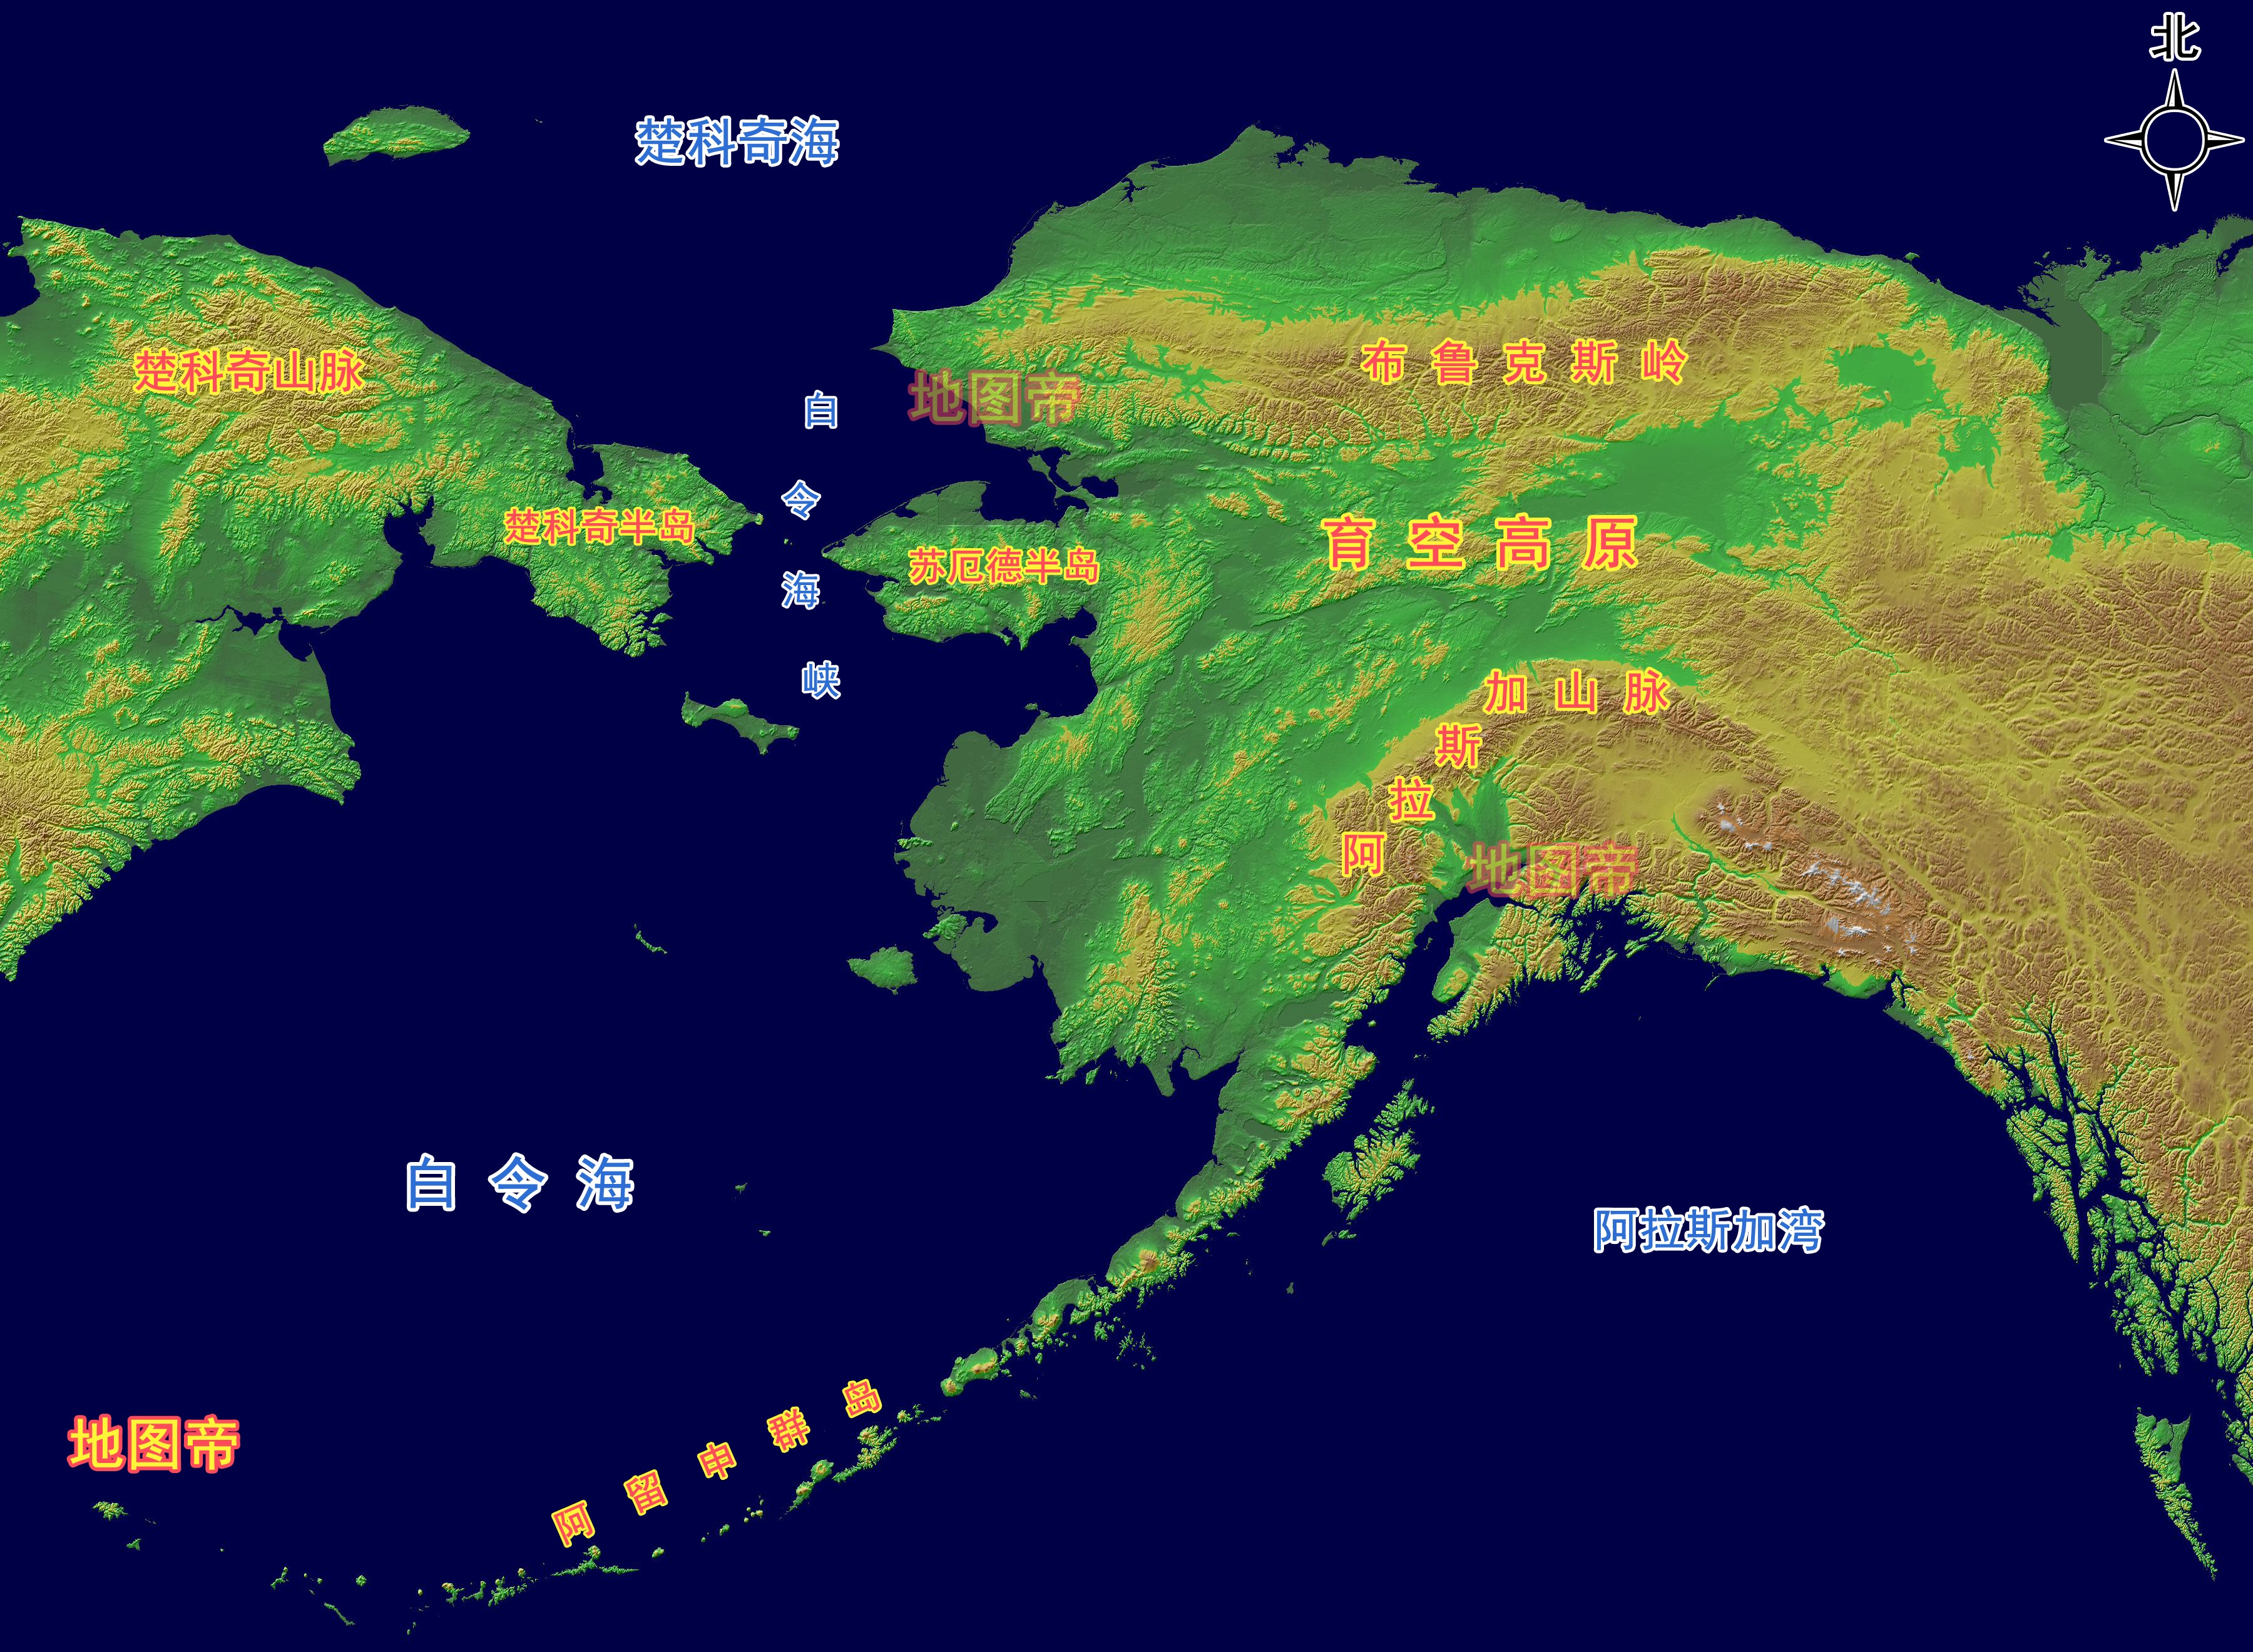 阿拉斯加半岛地图图片